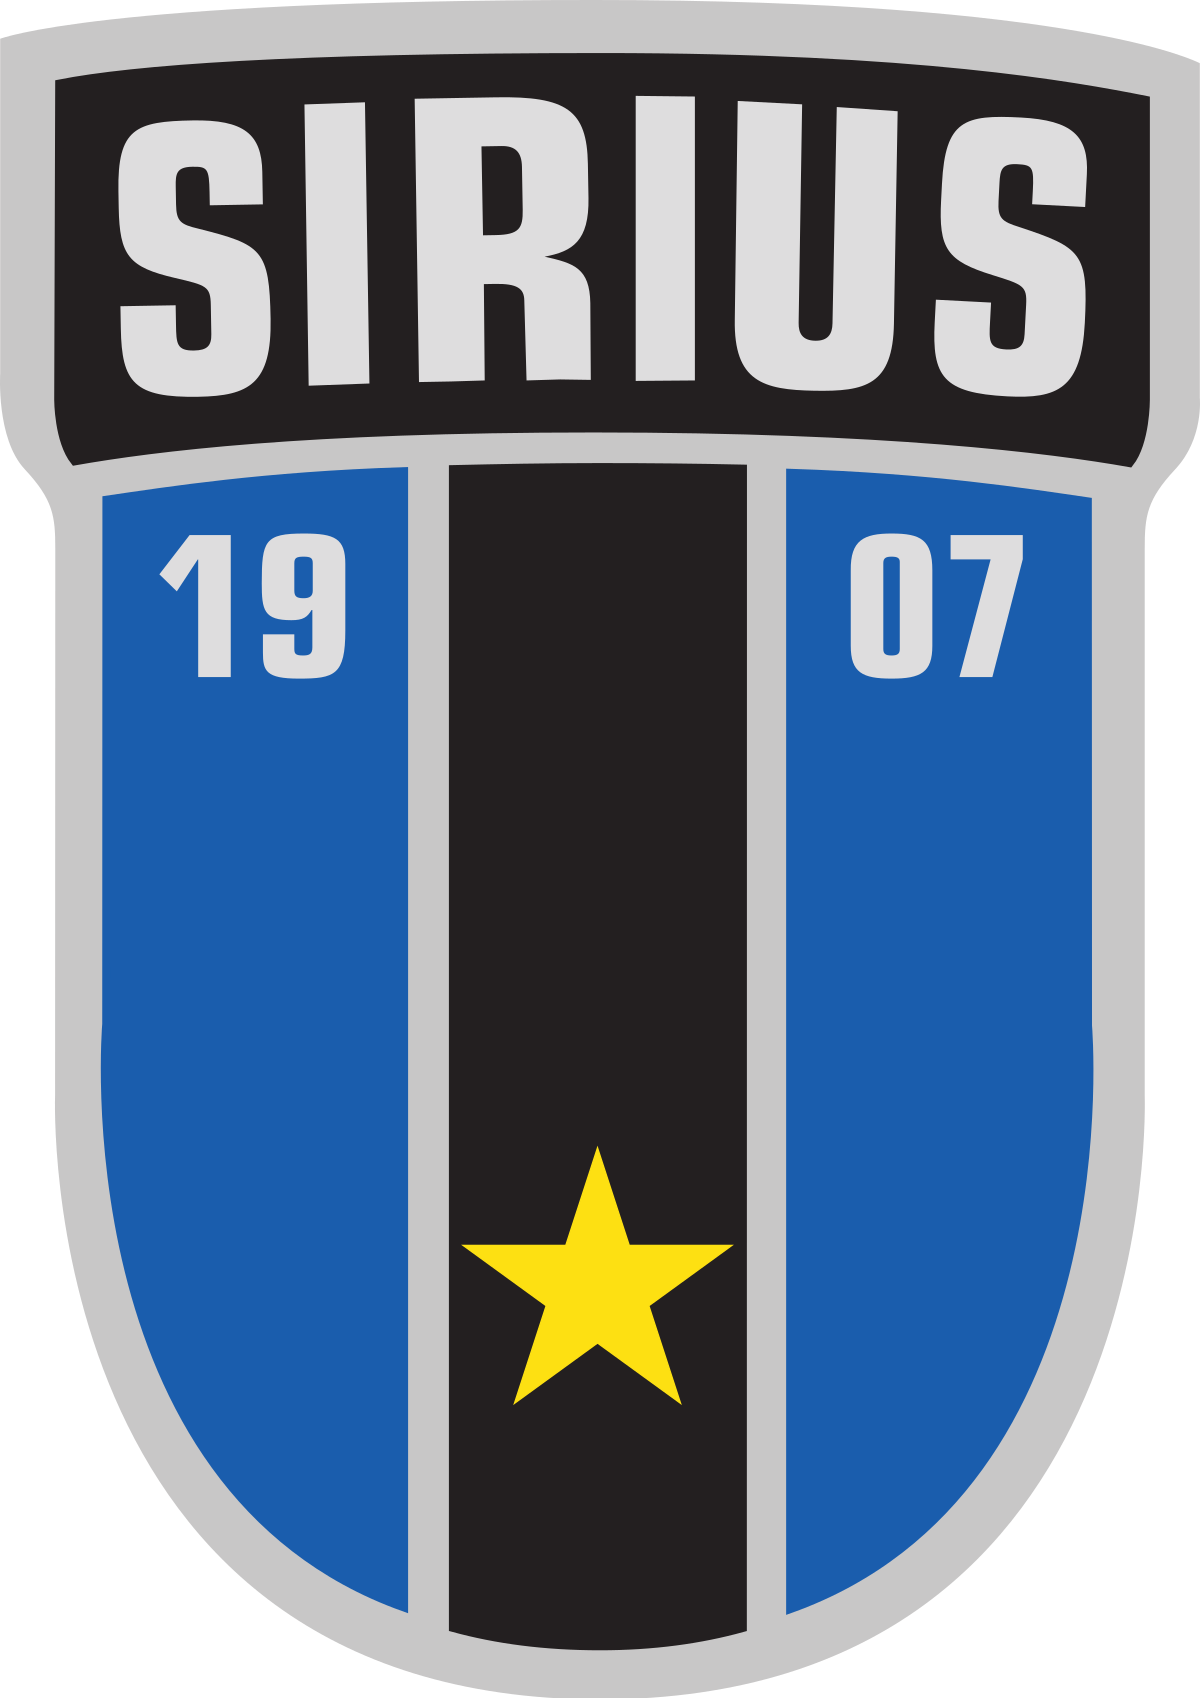 IK Sirius FK U21